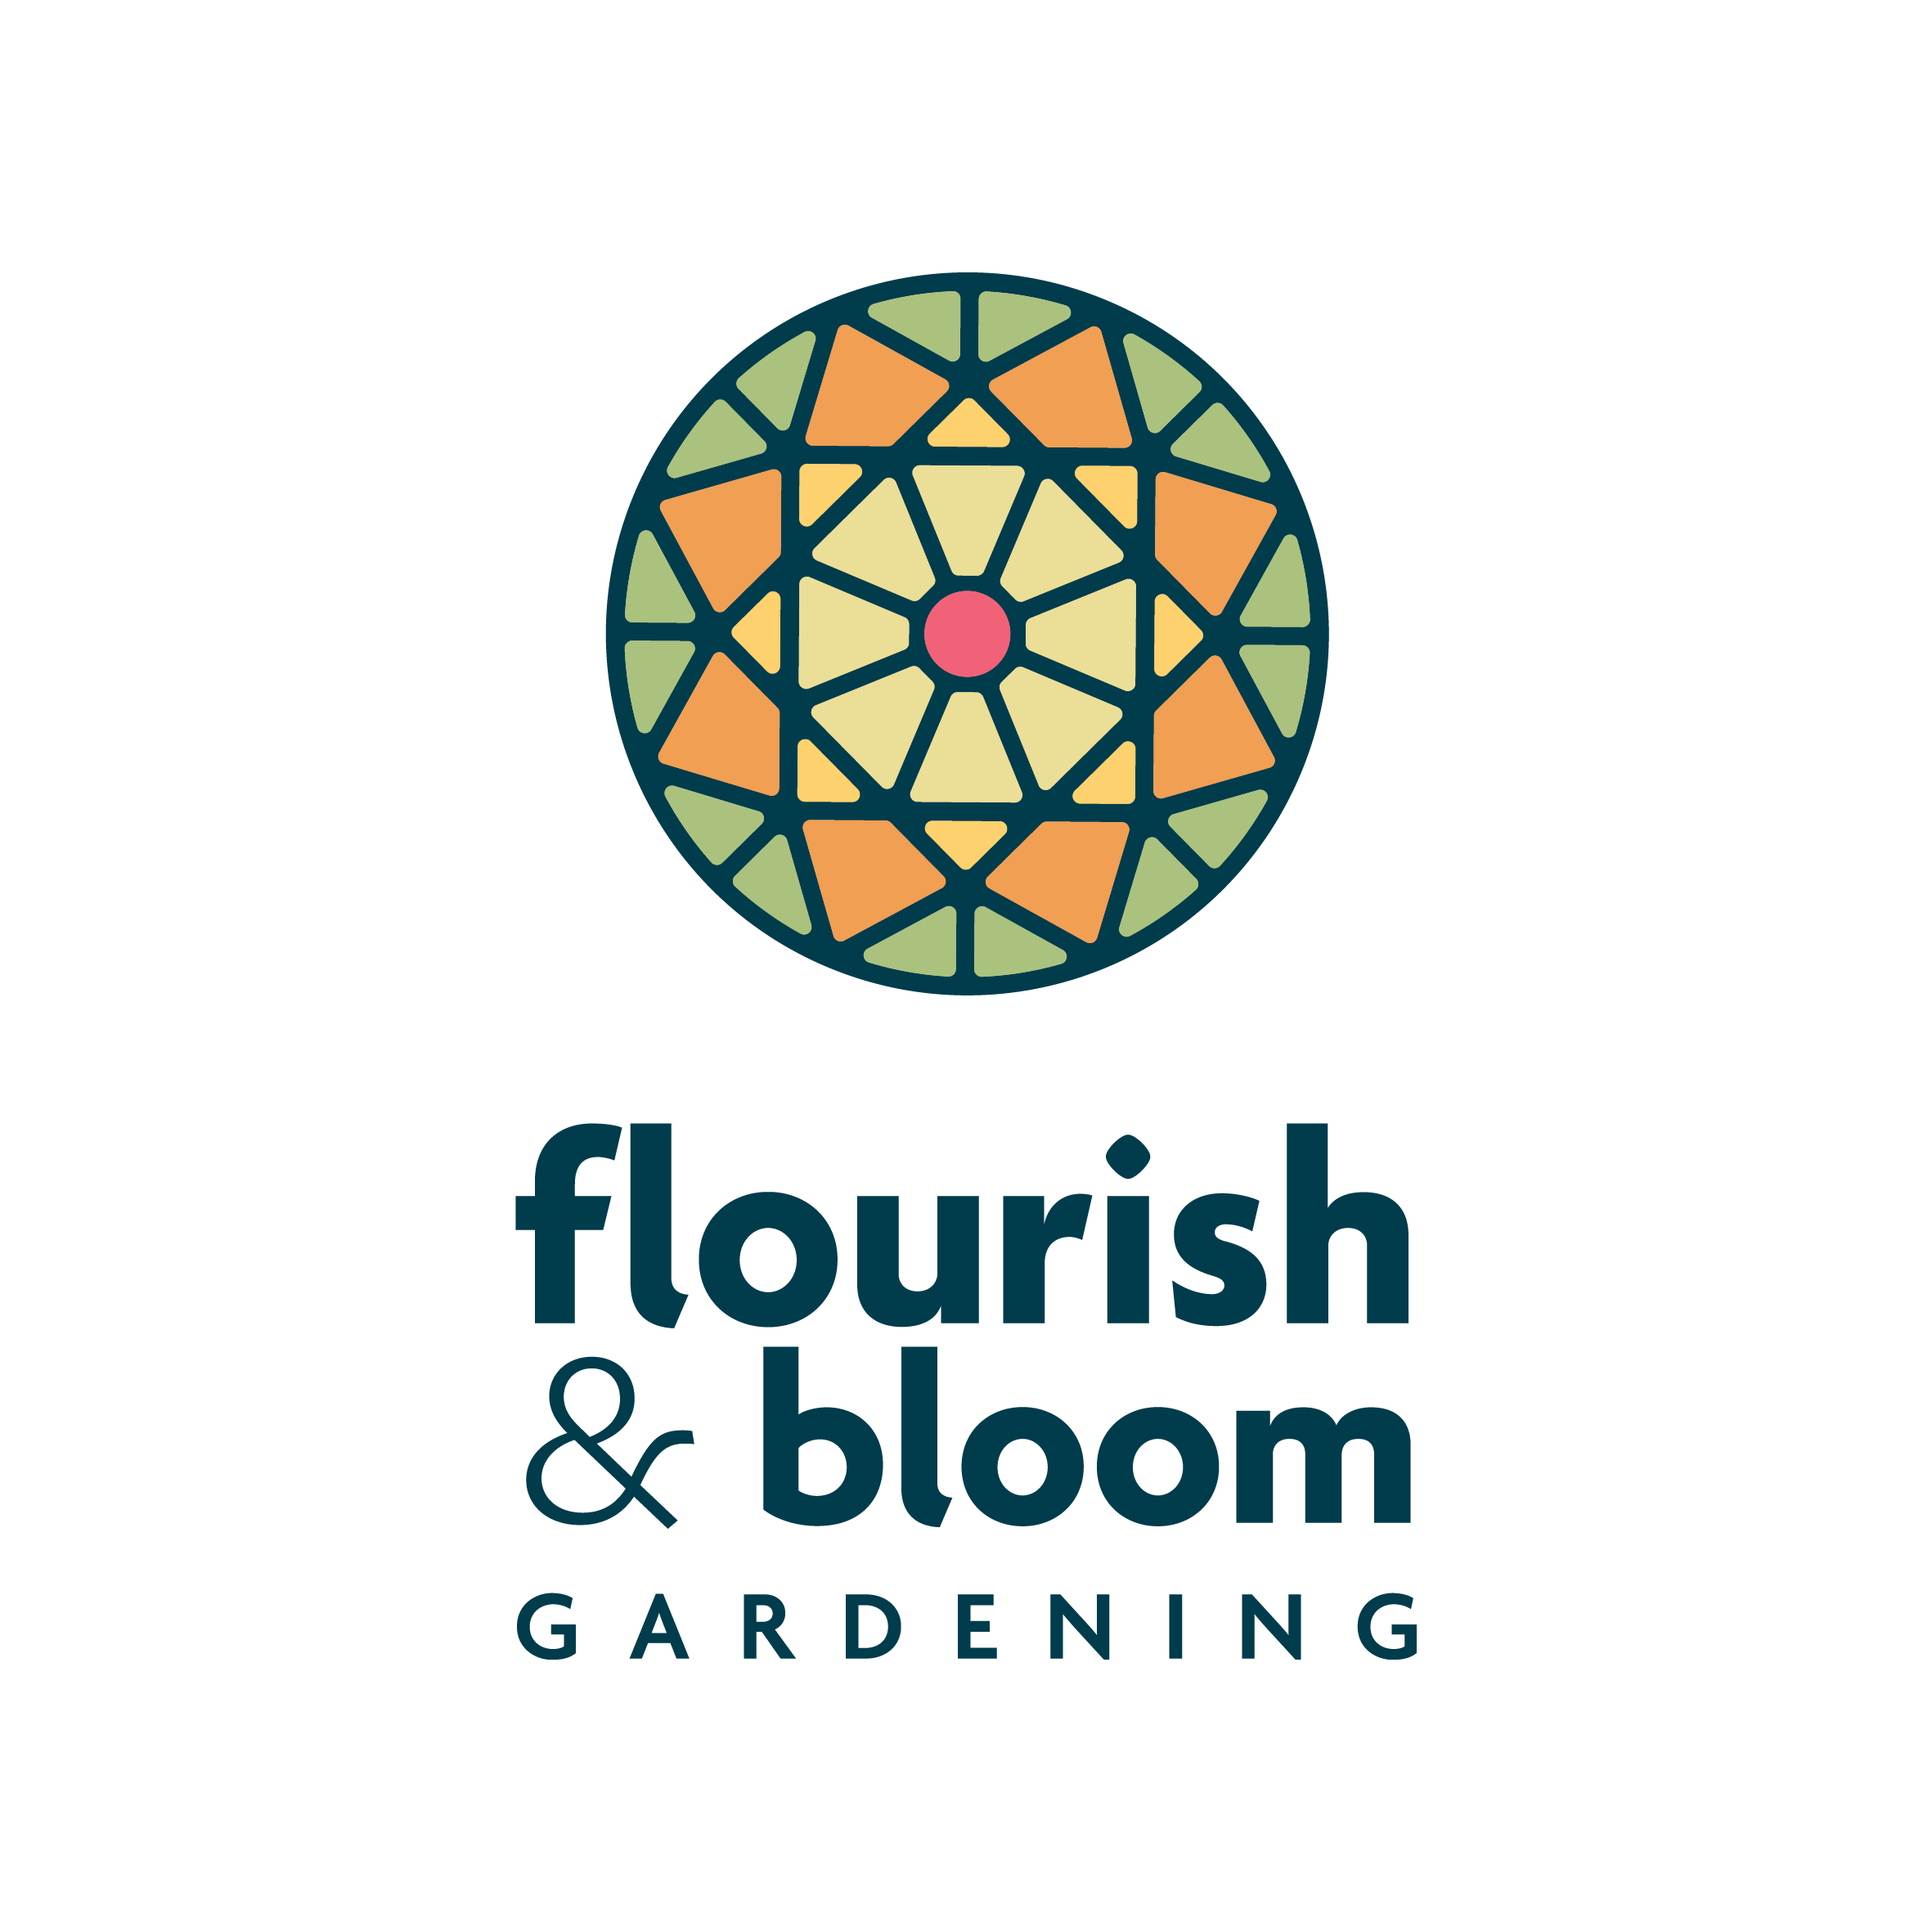 Flourish & Bloom Gardening